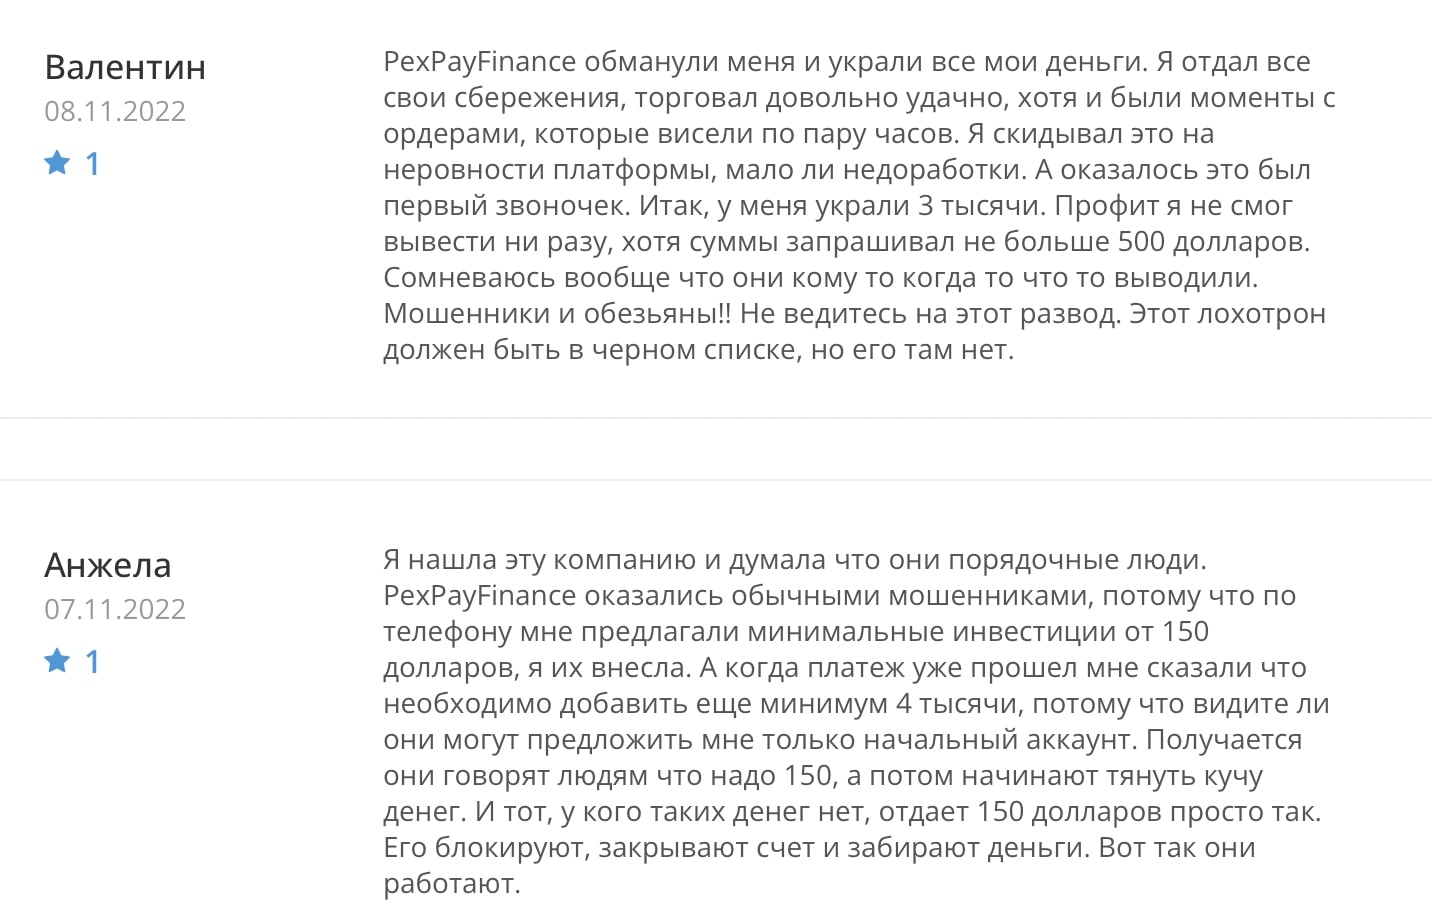 PexPayFinance: отзывы клиентов о работе компании в 2022 году